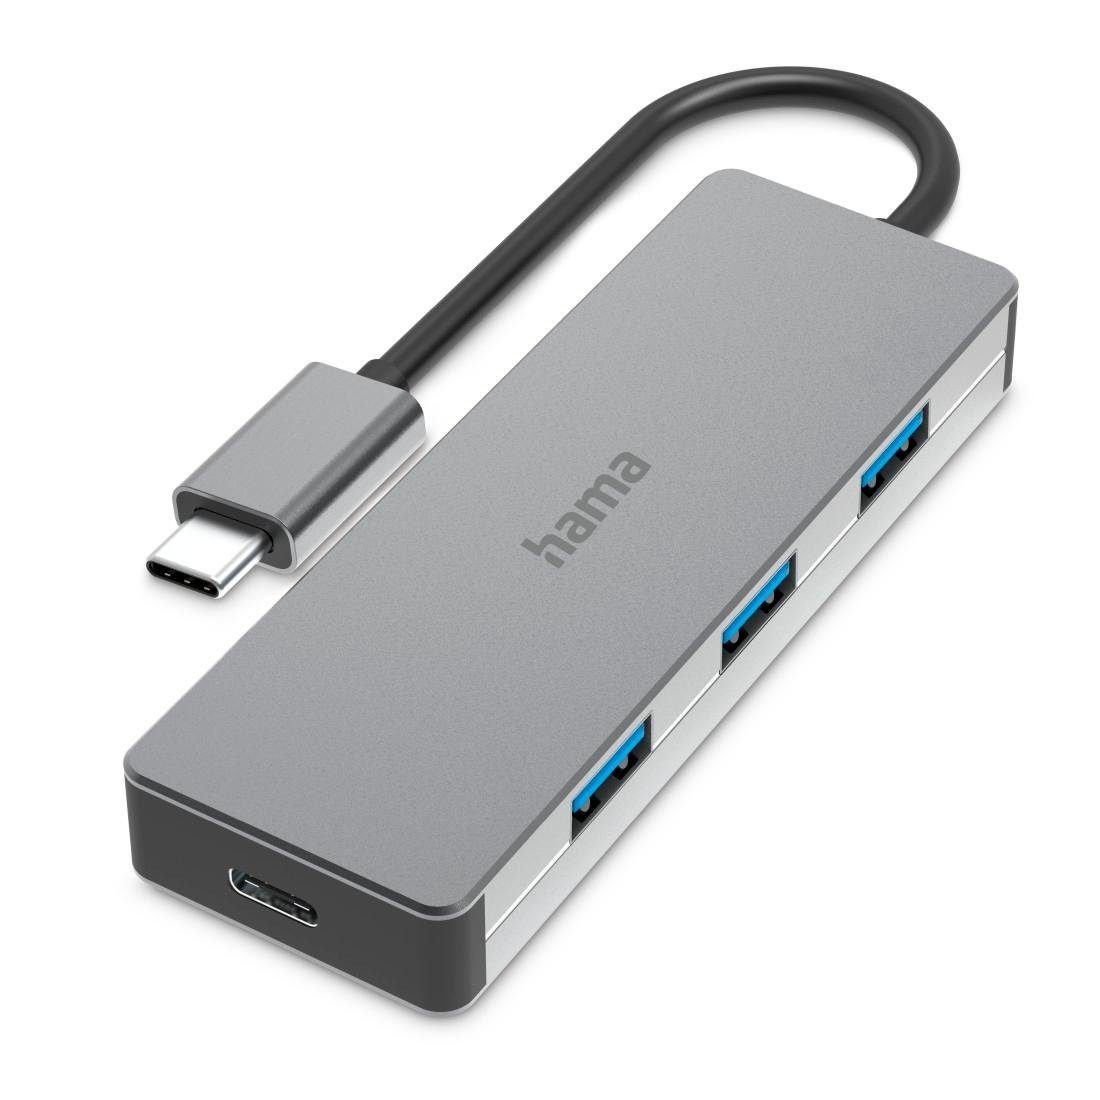 Hama USB-C Multiport Hub für Laptop mit 4 Ports, USB-A, USB-C, silberfarben USB-Adapter USB-C zu USB Typ A, USB-C, 15 cm, Laptop Dockingstation, USB Adapter, robustes Aluminiumgehäuse, kompakt